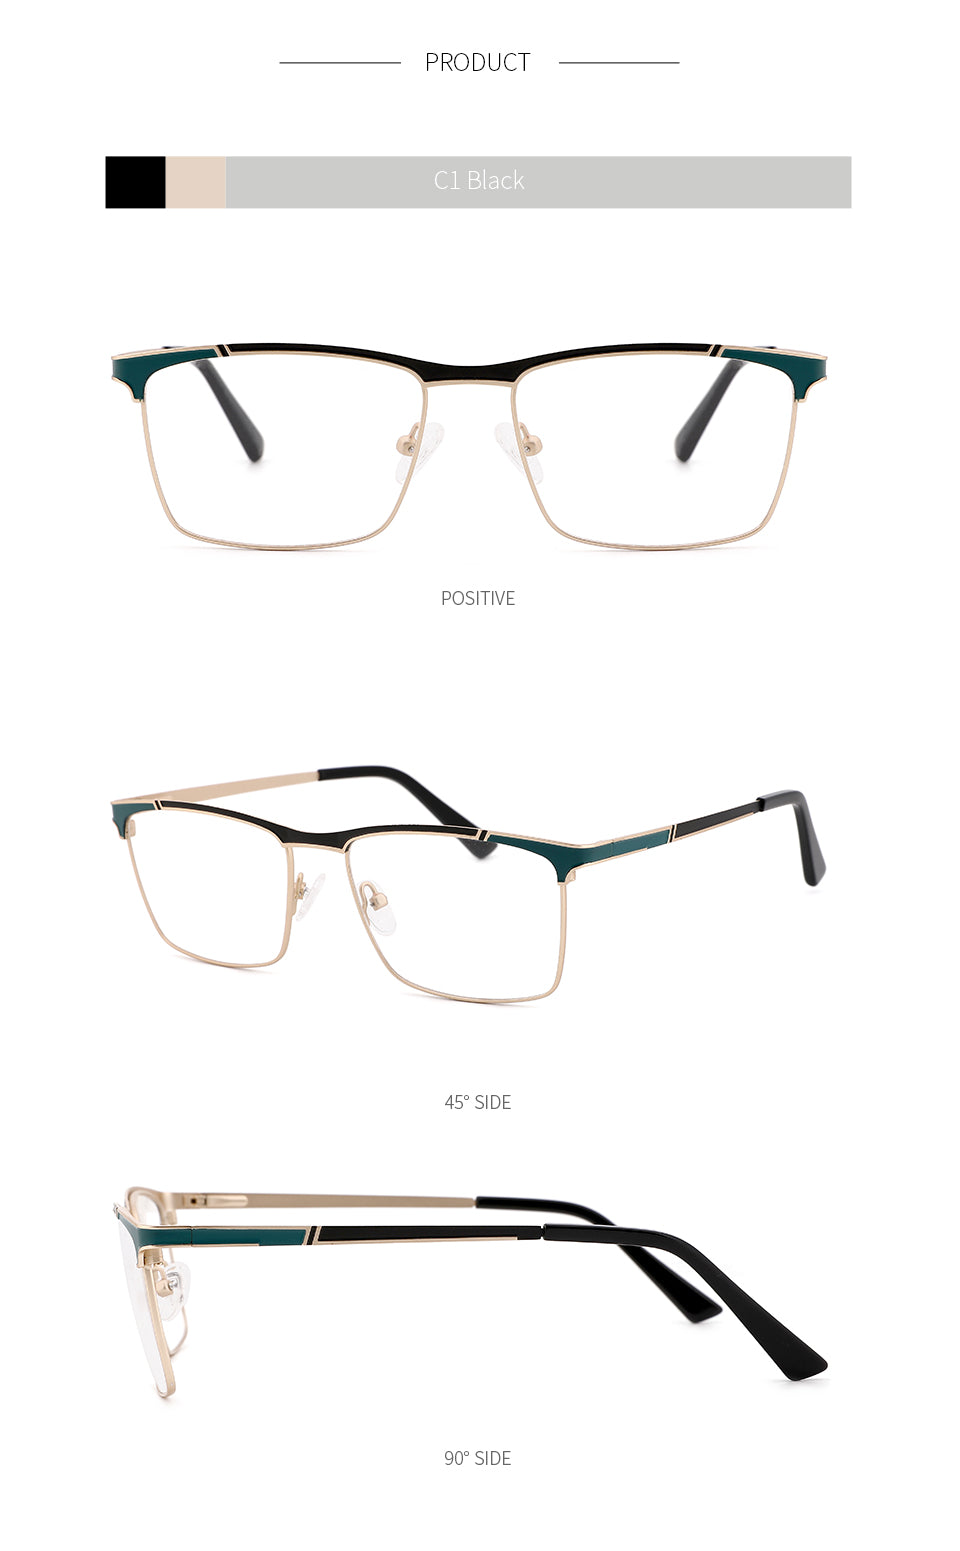 Kansept Men's Full Rim Square Stainless Steel Frame Eyeglasses 202107 Full Rim Kansept   